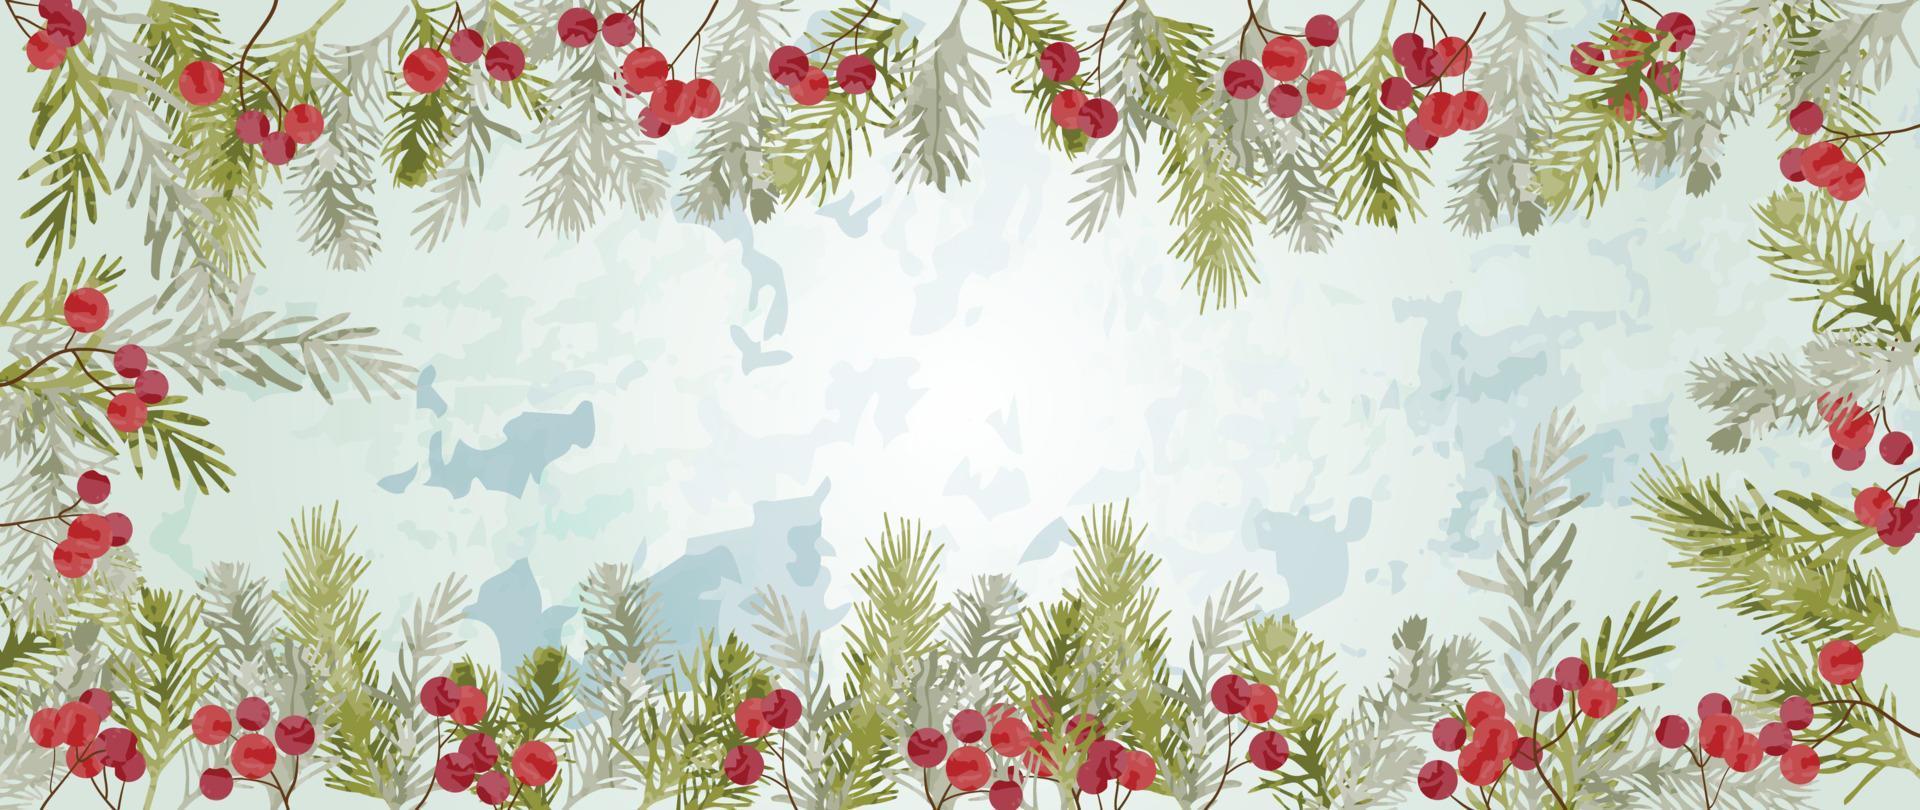 jul och vattenfärg abstrakt naturlig vinter- botanisk löv bakgrund vektor. dekorativ hand målad ram av tall löv och bär. design för tapet, omslag, inbjudan kort, affisch. vektor